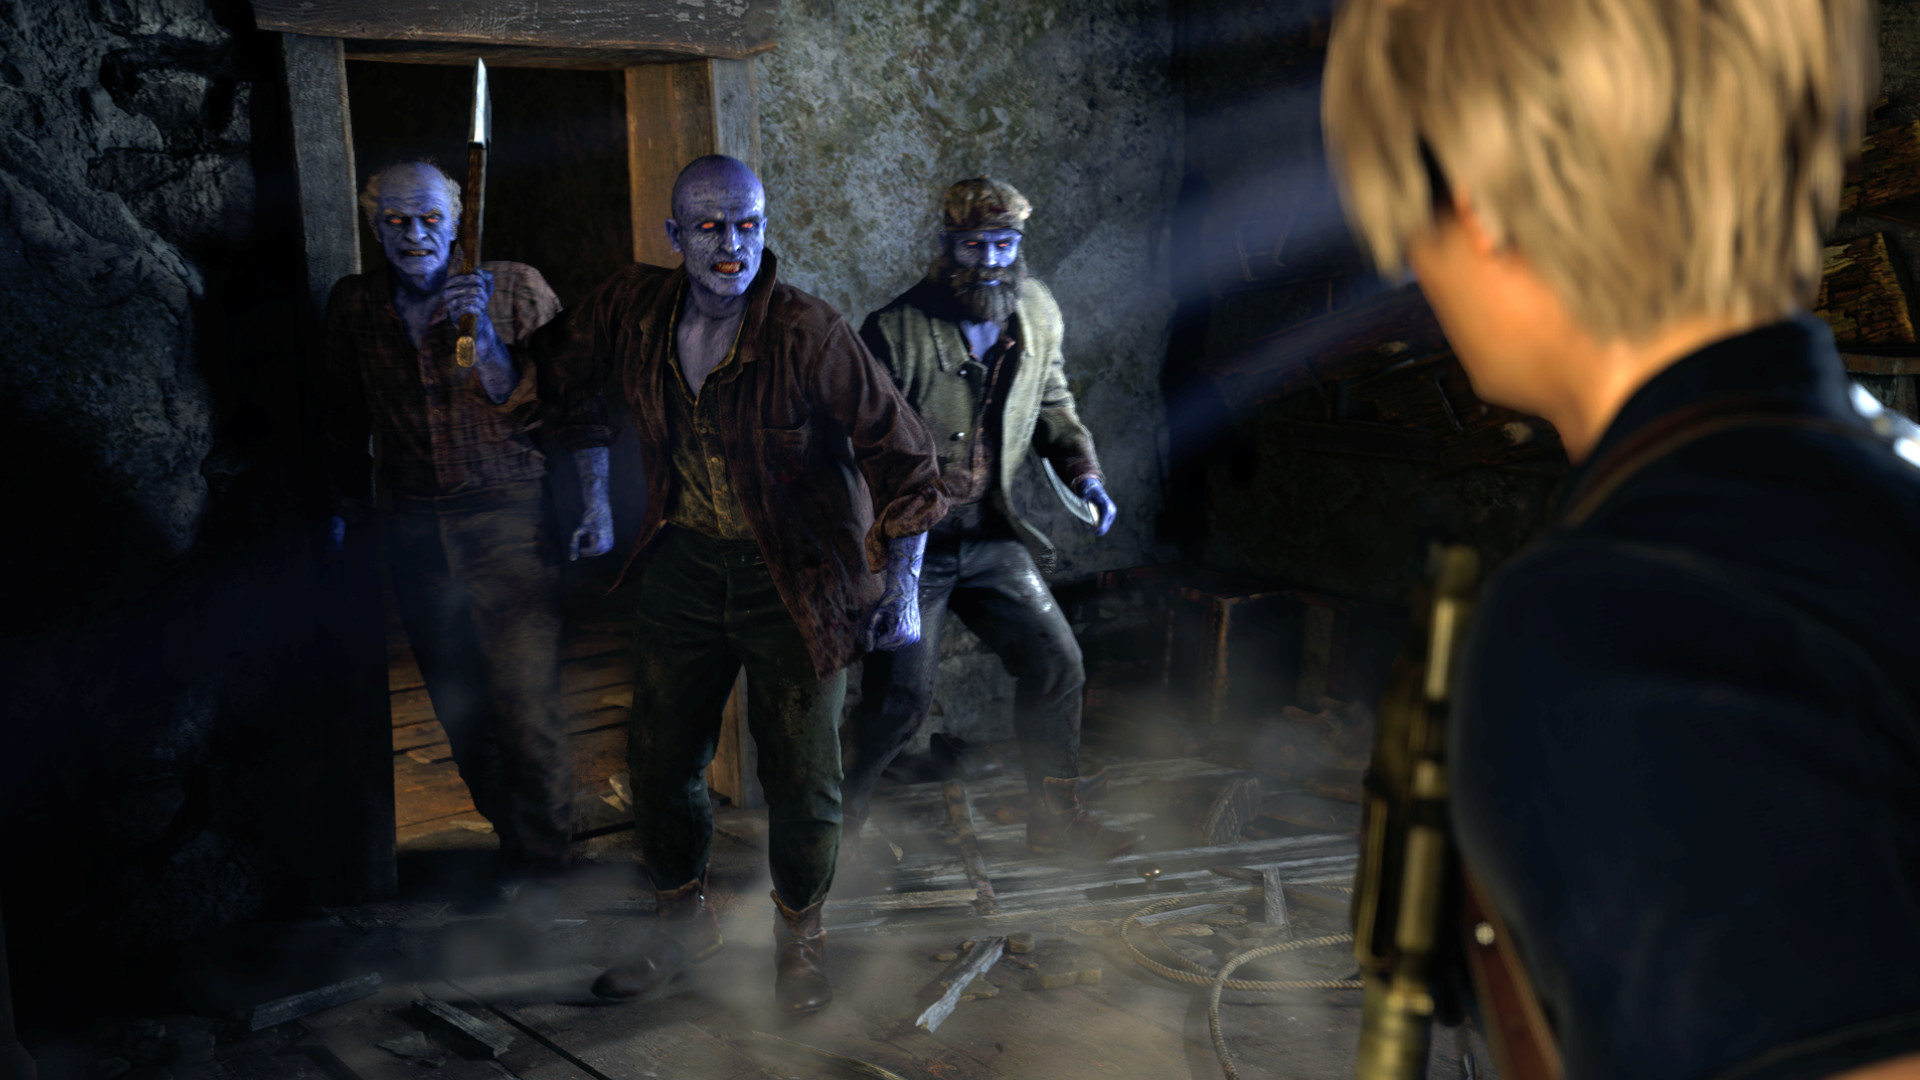 10 mods de Resident Evil 4 para ampliar sua experiência no PC